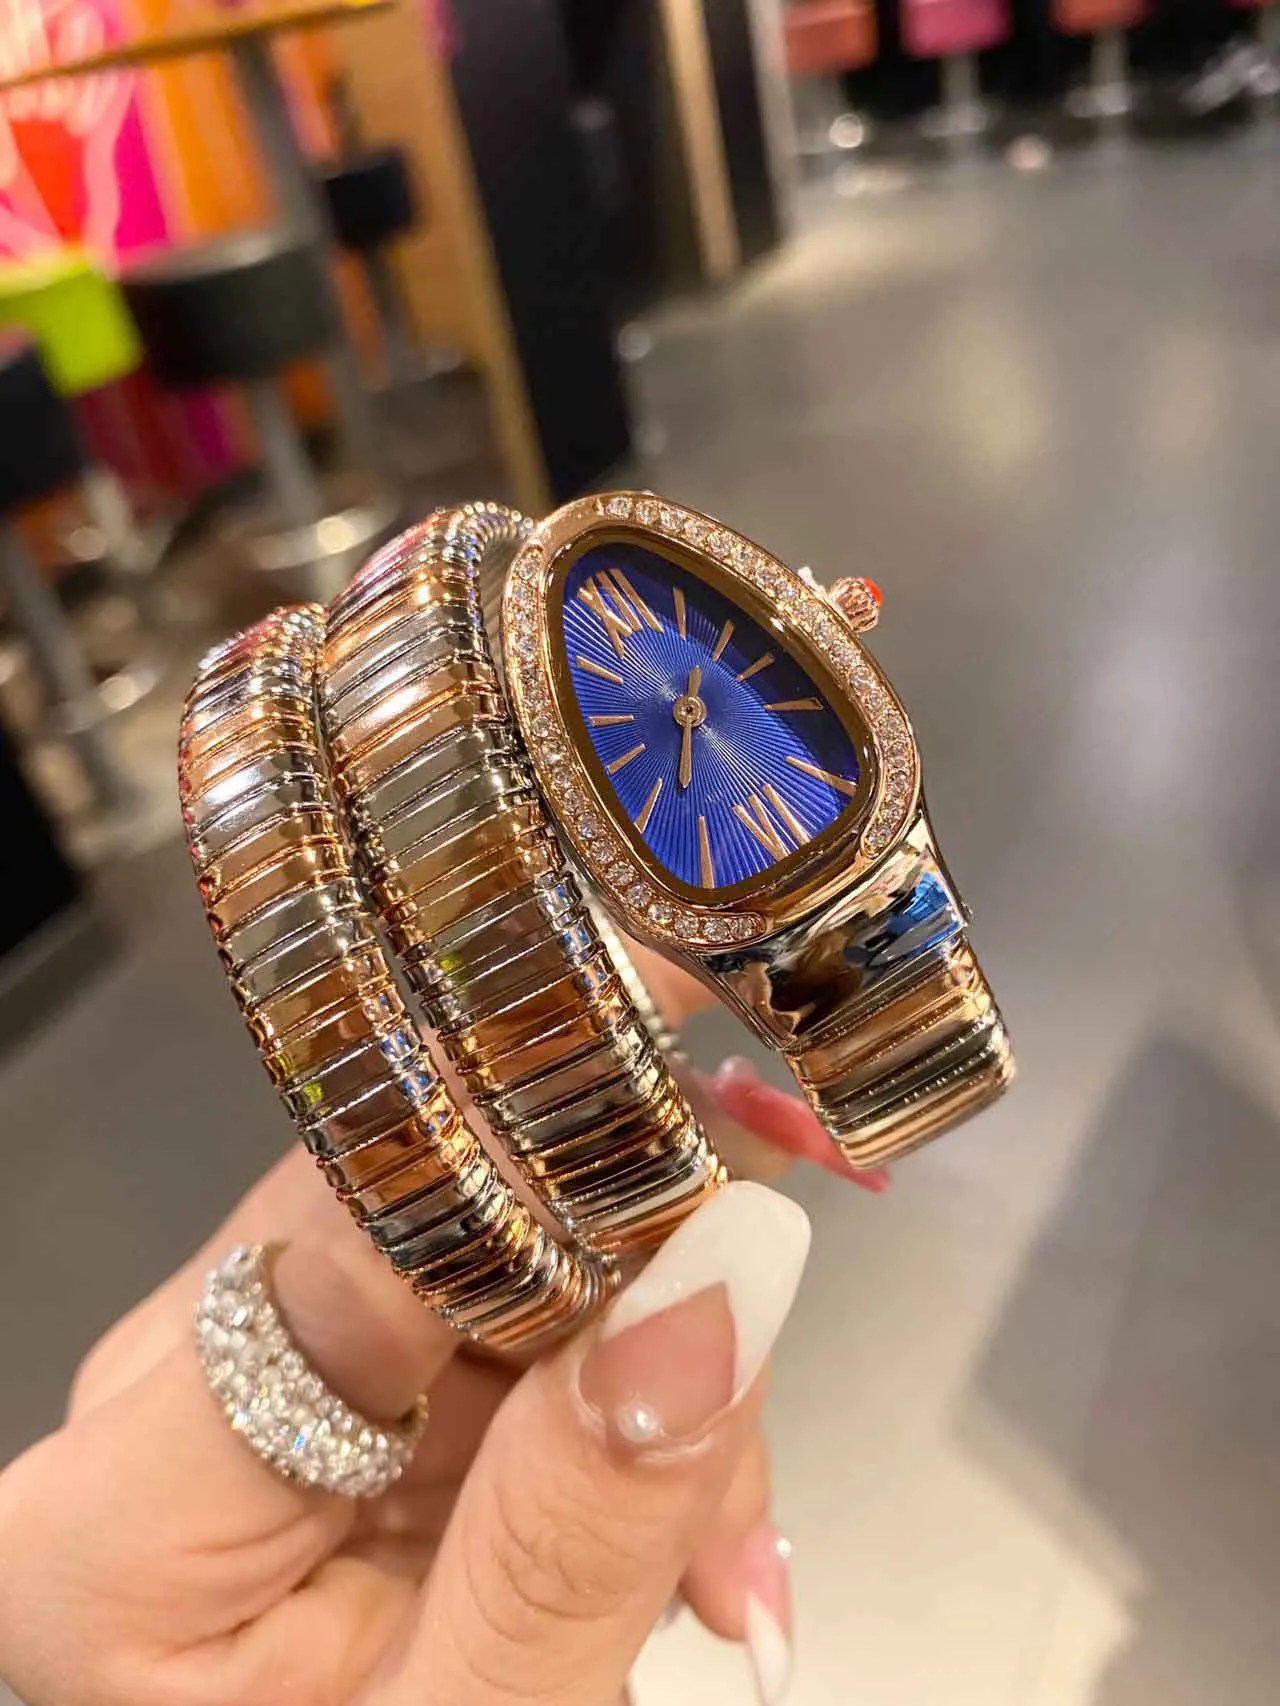 Designer horloge Vierkant quartz uurwerk met roestvrij staal 32 mm diamanten bezel uurwerkmaat dameshorloge heeft een dubbele surround slangvormig